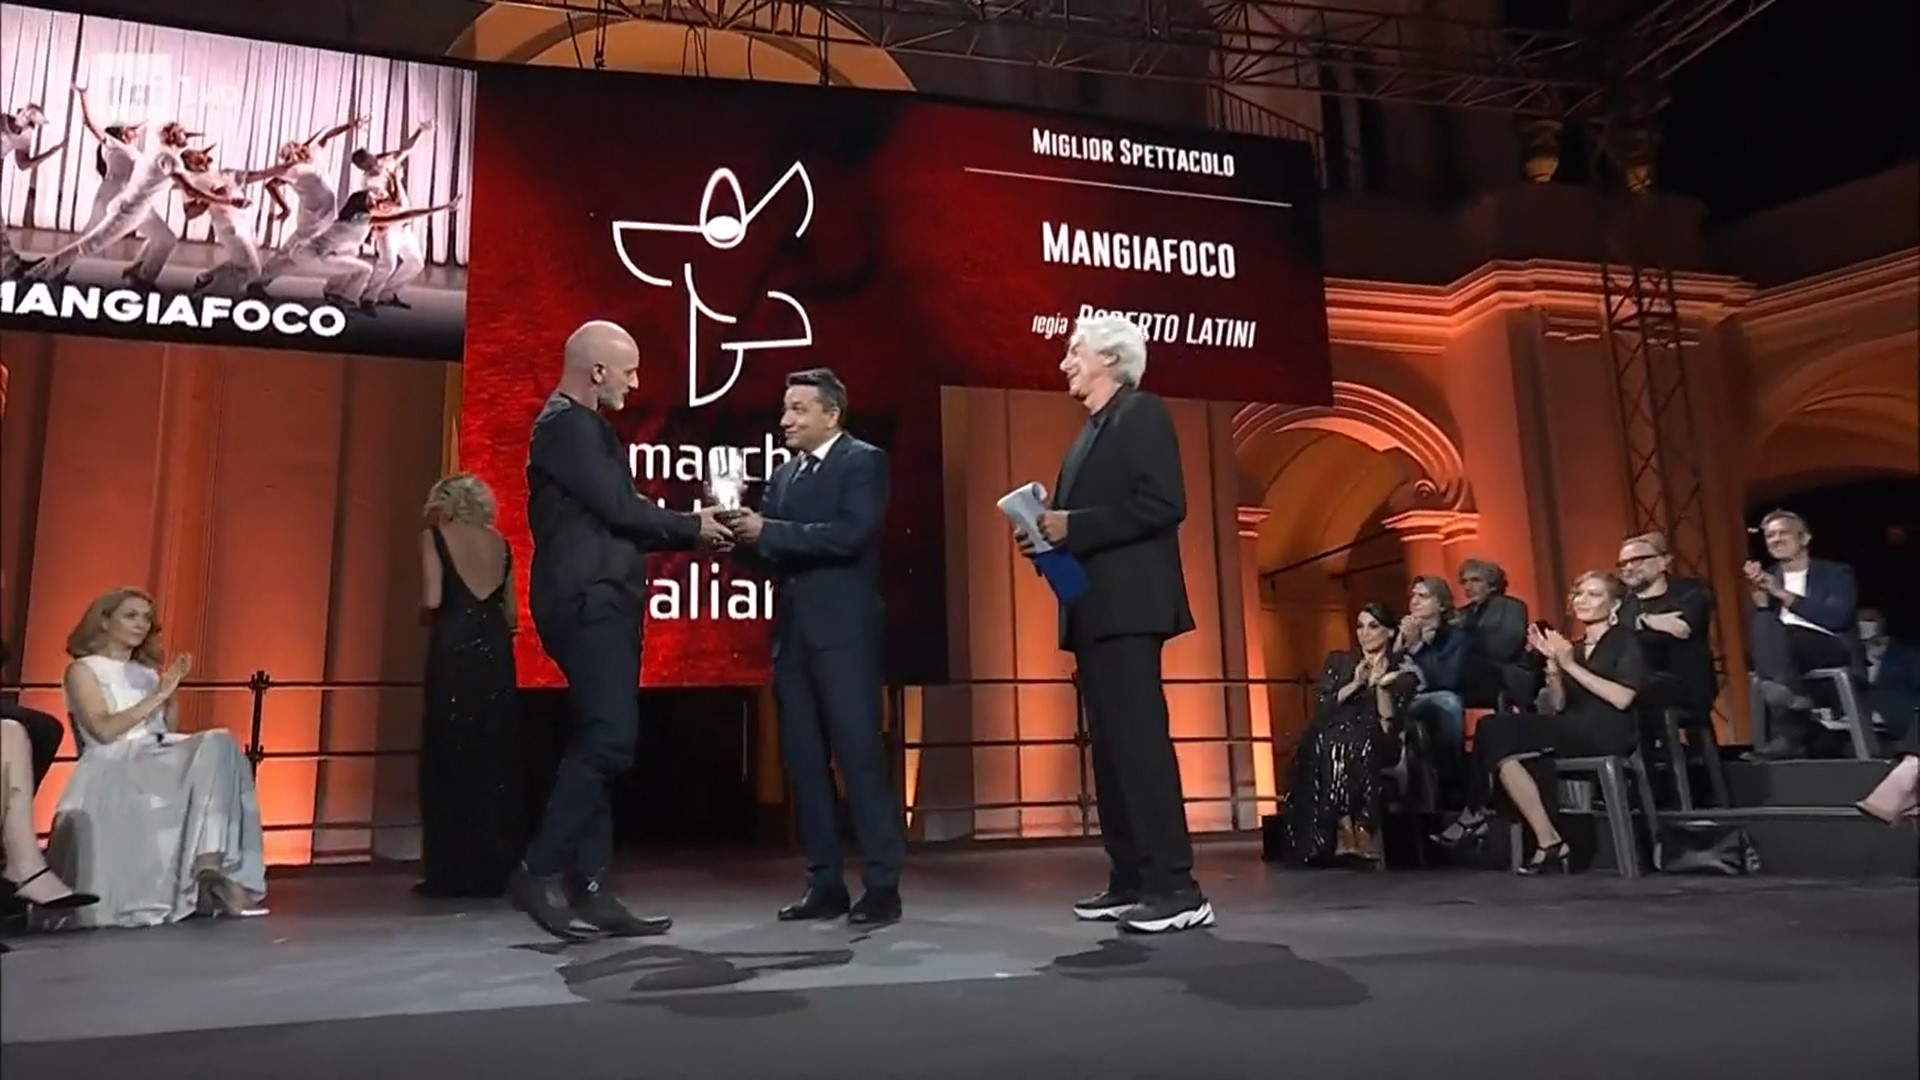 Matera 2019, “Mangiafoco” miglior spettacolo al Premio “Le Maschere del Teatro Italiano”